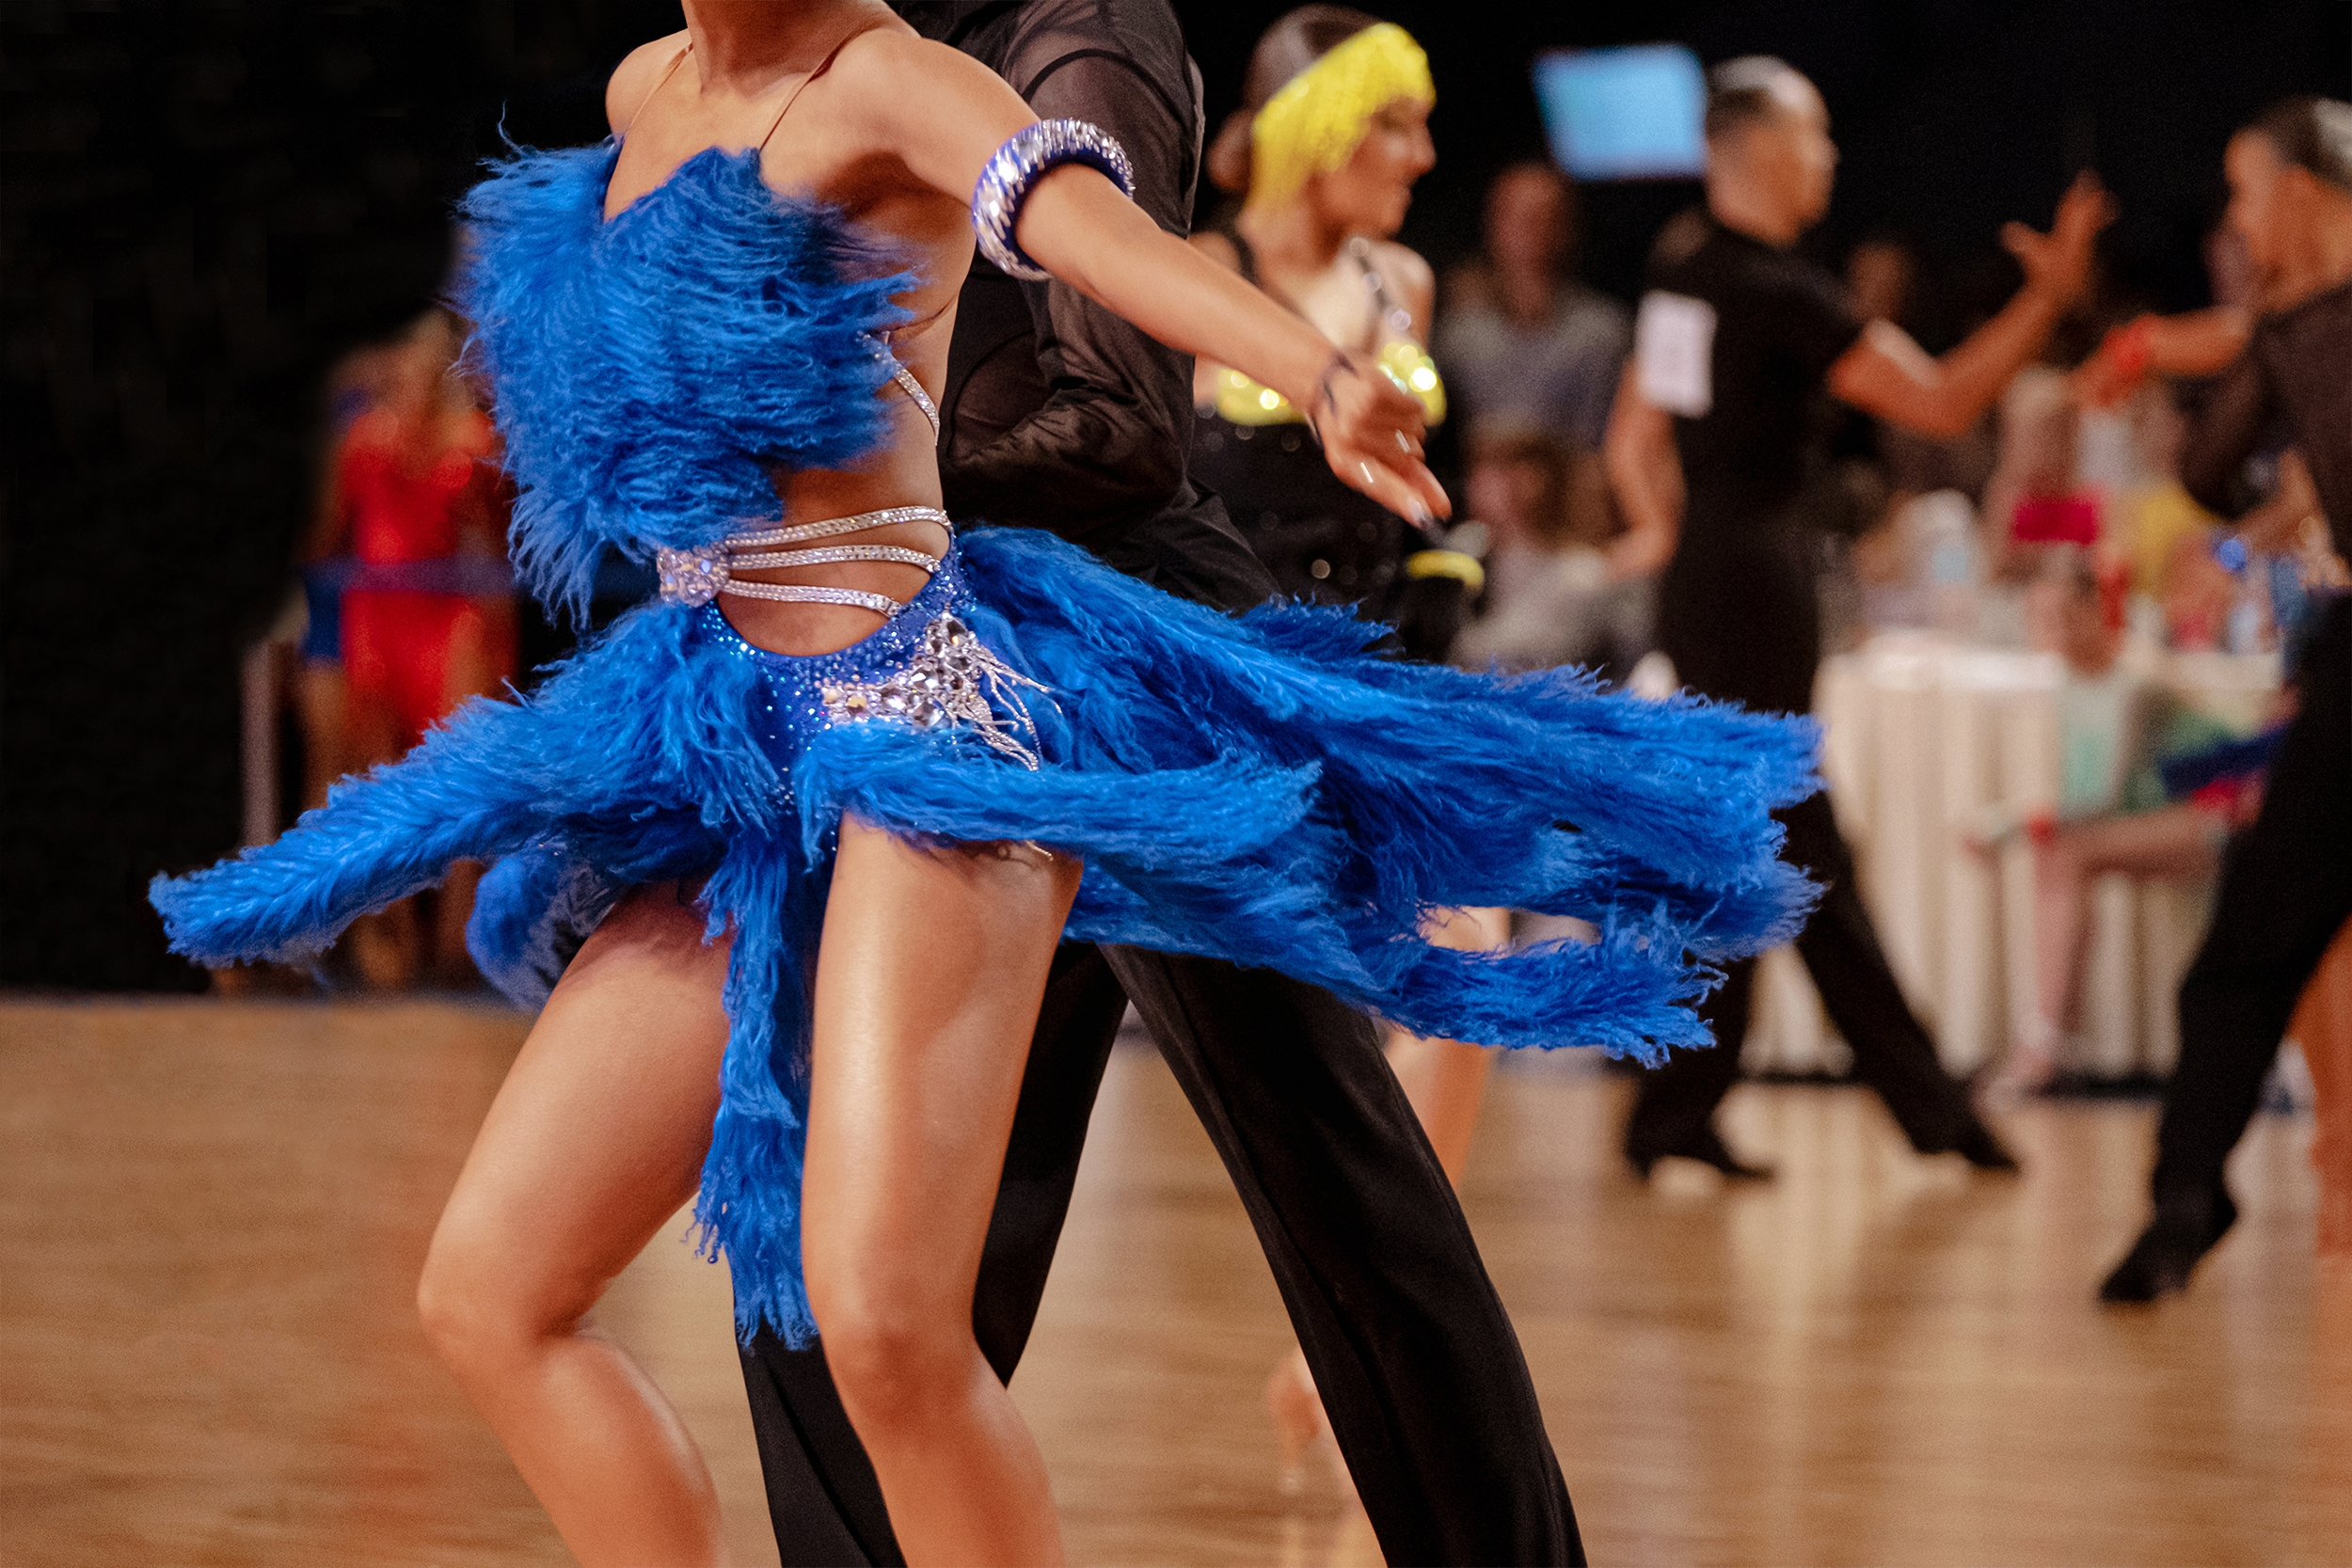 社交ダンスのエネルギー溢れる躍動 – ジャイブの勢いと自由さについて